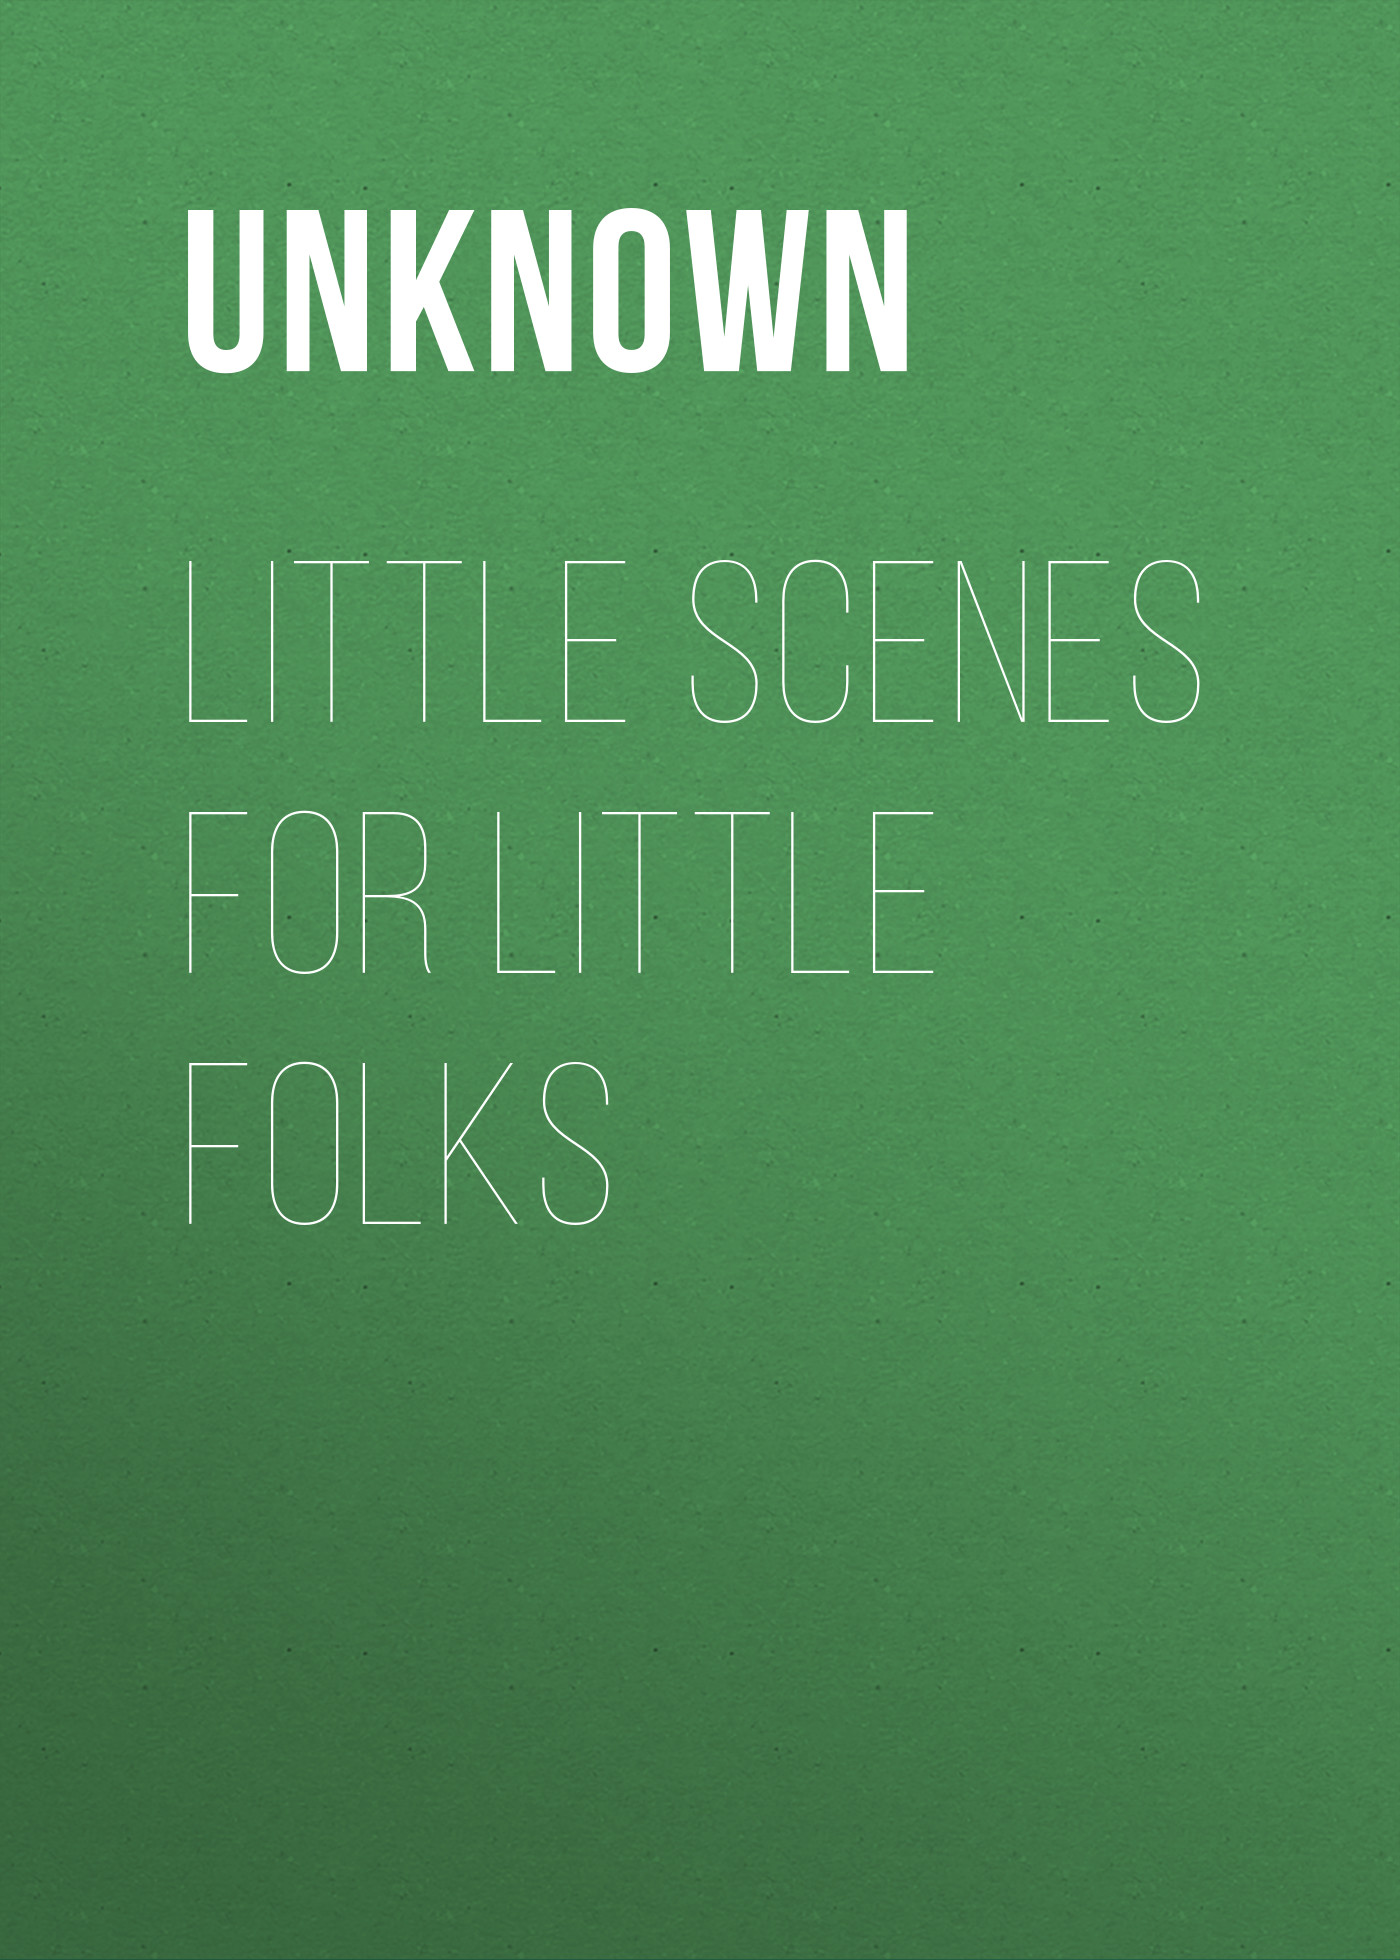 Книга Little Scenes for Little Folks из серии , созданная Unknown Unknown, может относится к жанру Зарубежные детские книги, Зарубежная старинная литература, Зарубежная классика. Стоимость электронной книги Little Scenes for Little Folks с идентификатором 35495183 составляет 0 руб.